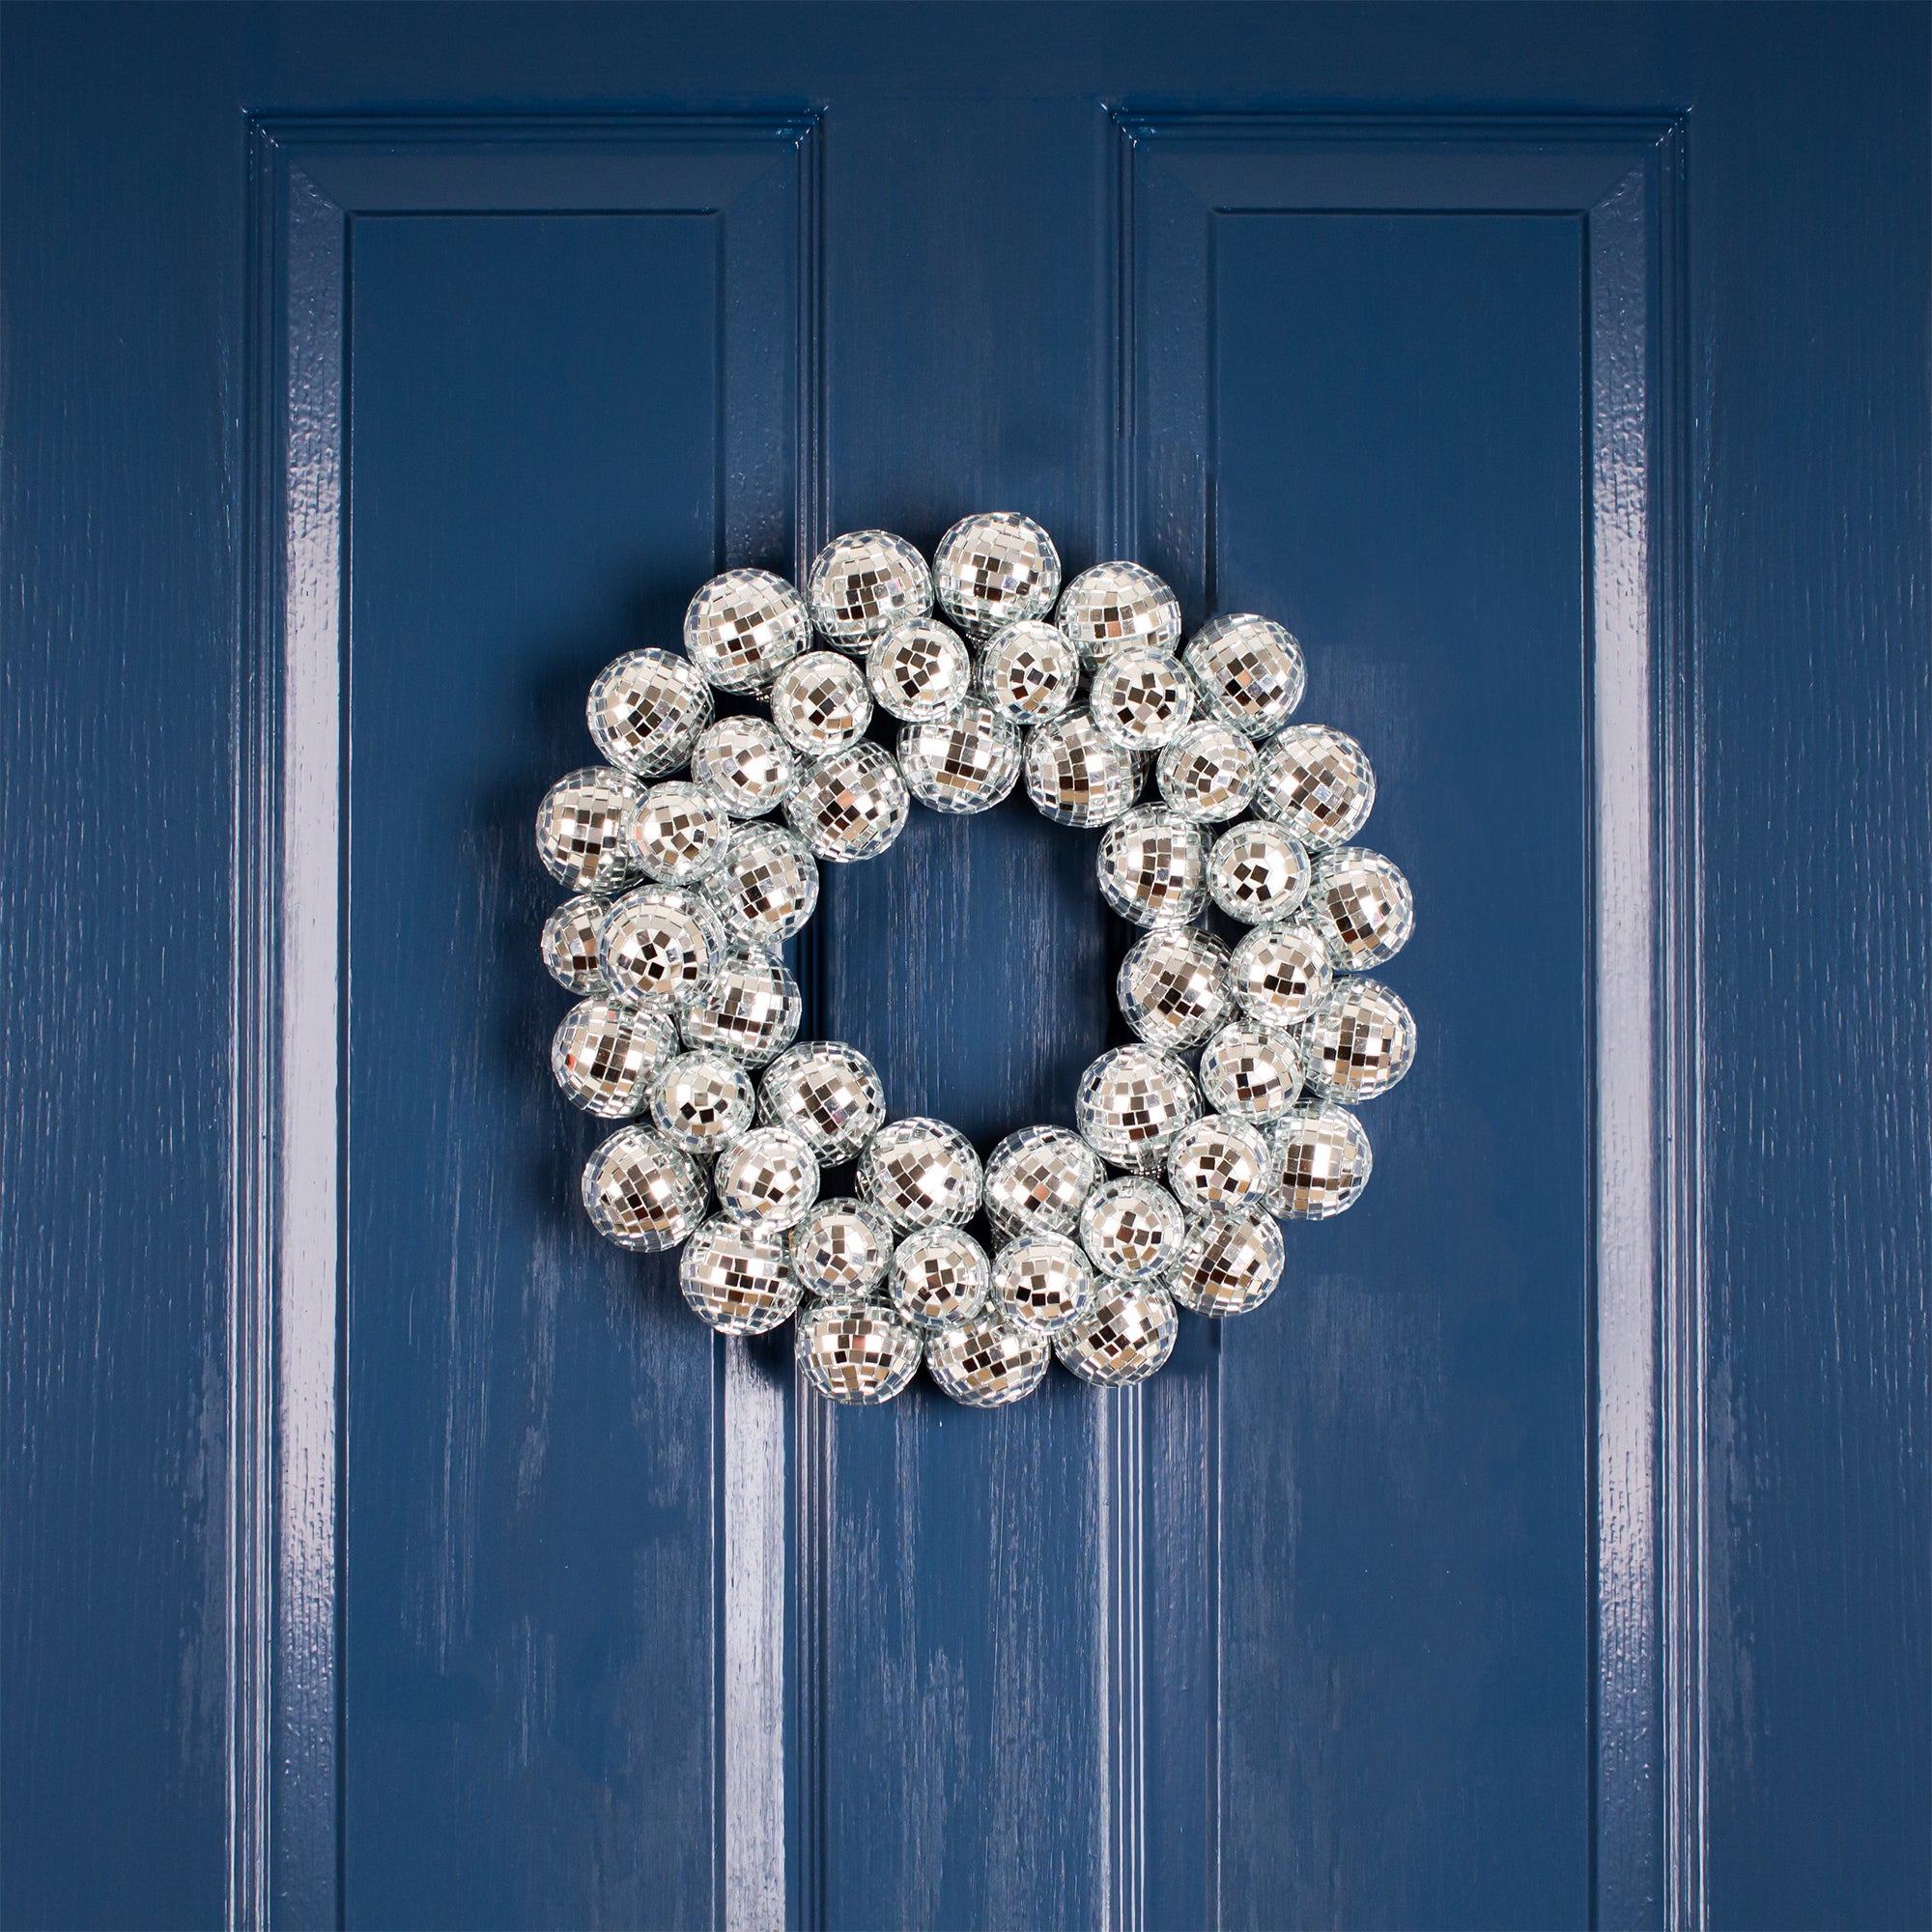 32cm Mirror Ball Wreath Silver